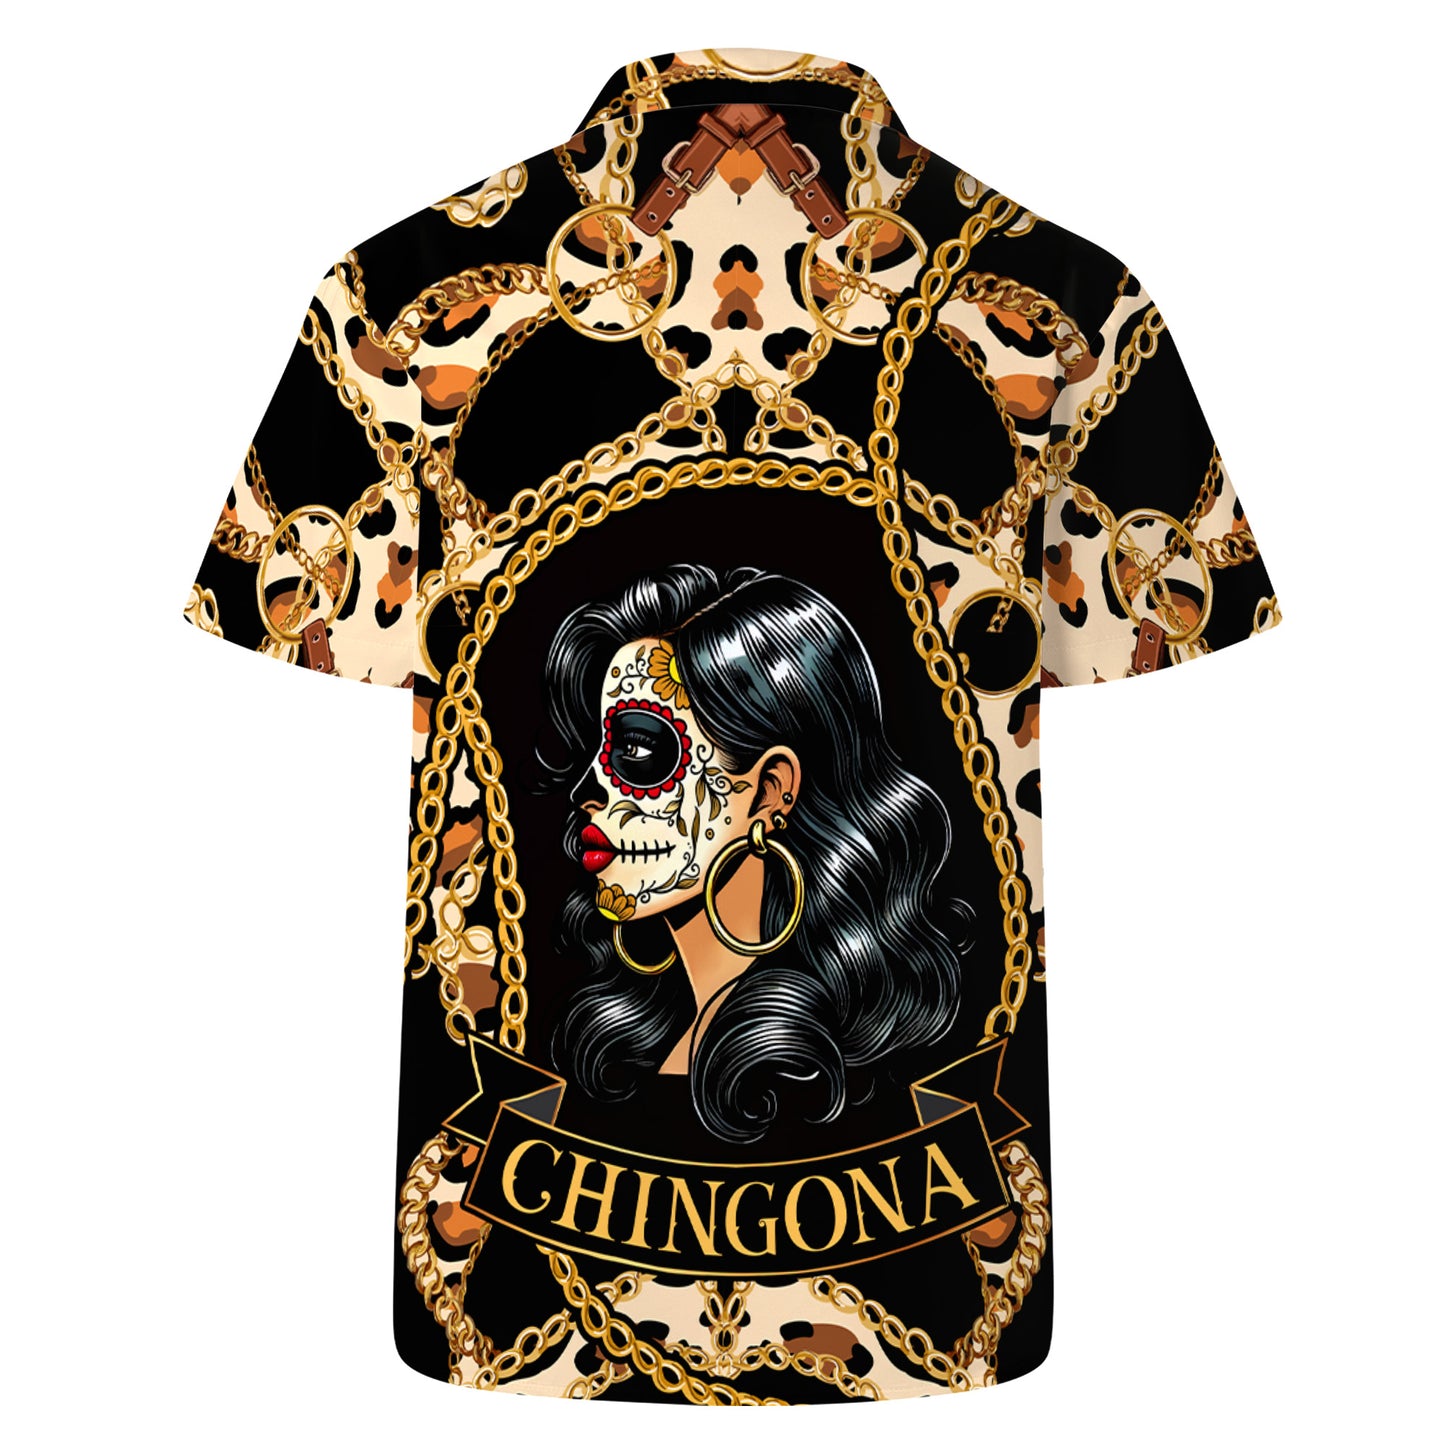 Chingona Porque Pendejas Hay Muchas - Camisa Hawaiana Unisex Personalizada - HW_MX51